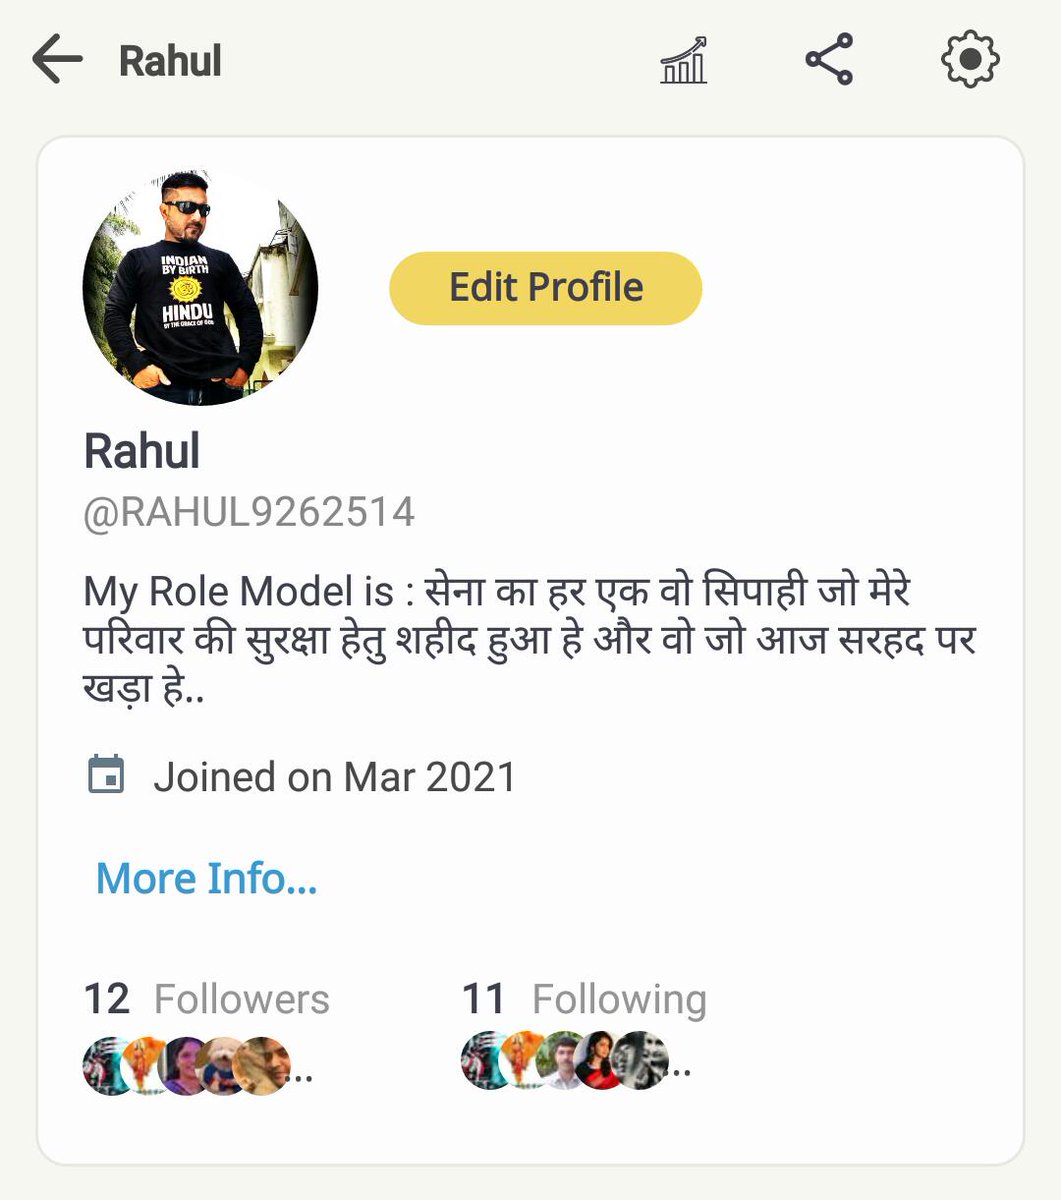 ट्विटर ने राहुल भाई का अकॉउंट उड़ा दिया है, आप चाहो तो भाई को Koo पर फॉलो कर सकते हो 🙏 @RAHUL9262514 
Pls follow